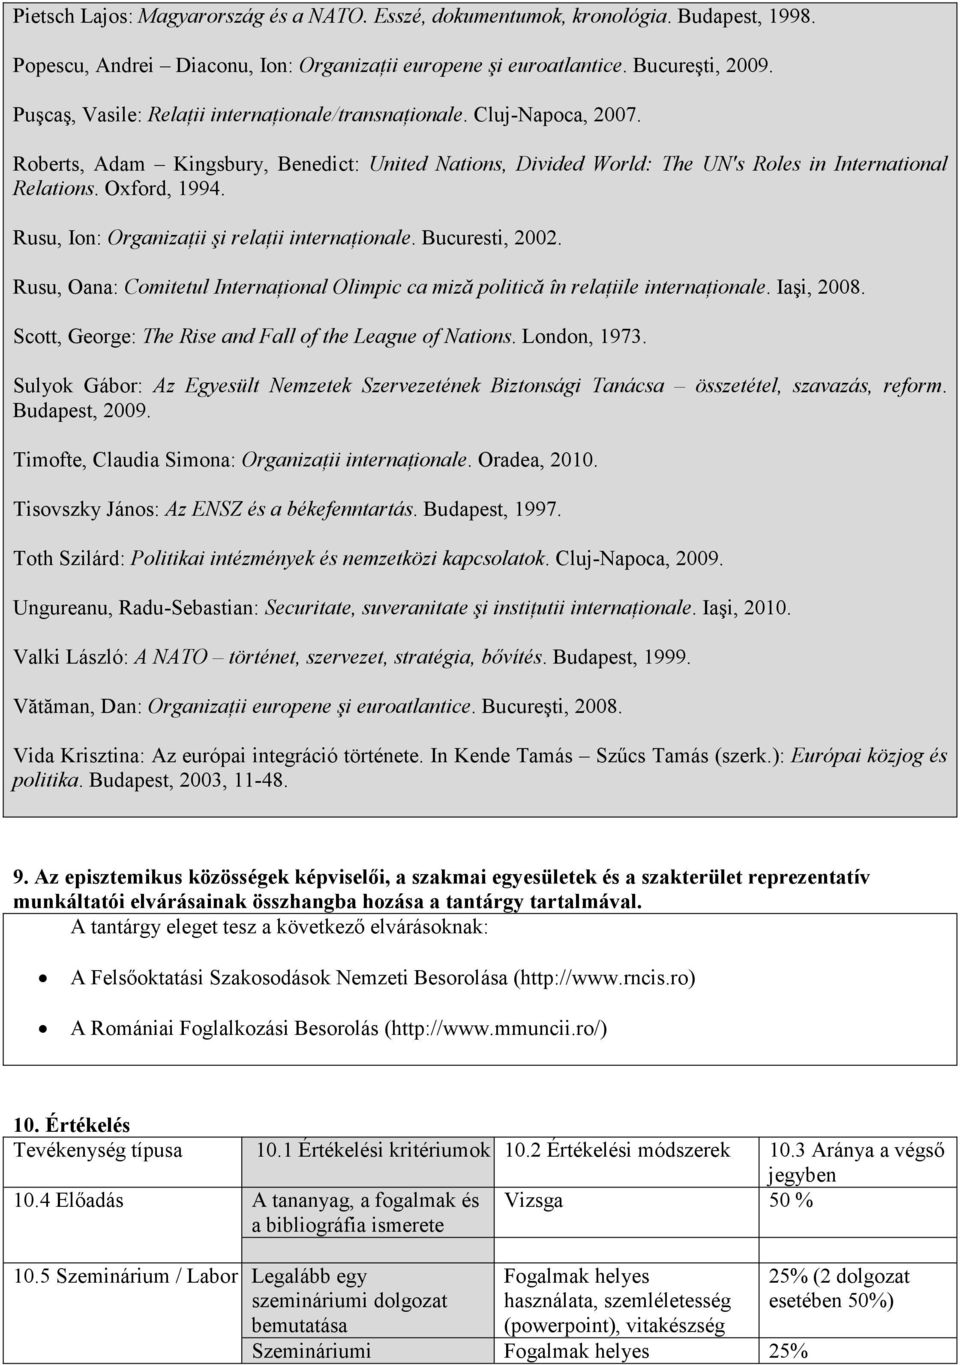 Rusu, Ion: OrganizaŃii şi relańii internańionale. Bucuresti, 2002. Rusu, Oana: Comitetul InternaŃional Olimpic ca miză politică în relańiile internańionale. Iaşi, 2008.